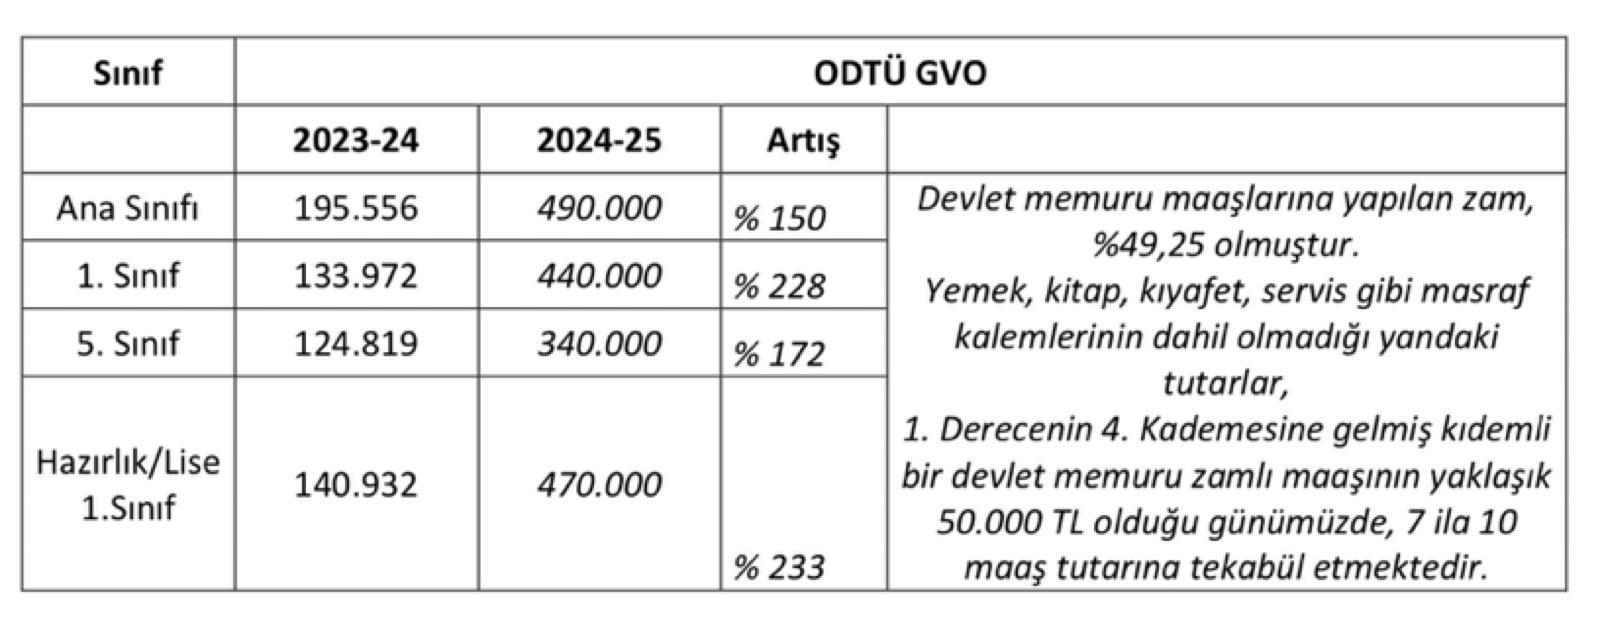 Fahiş zam yapan okullar kervanına ODTÜ GVO da katıldı: Yüzde 233'lük zam yapıldı